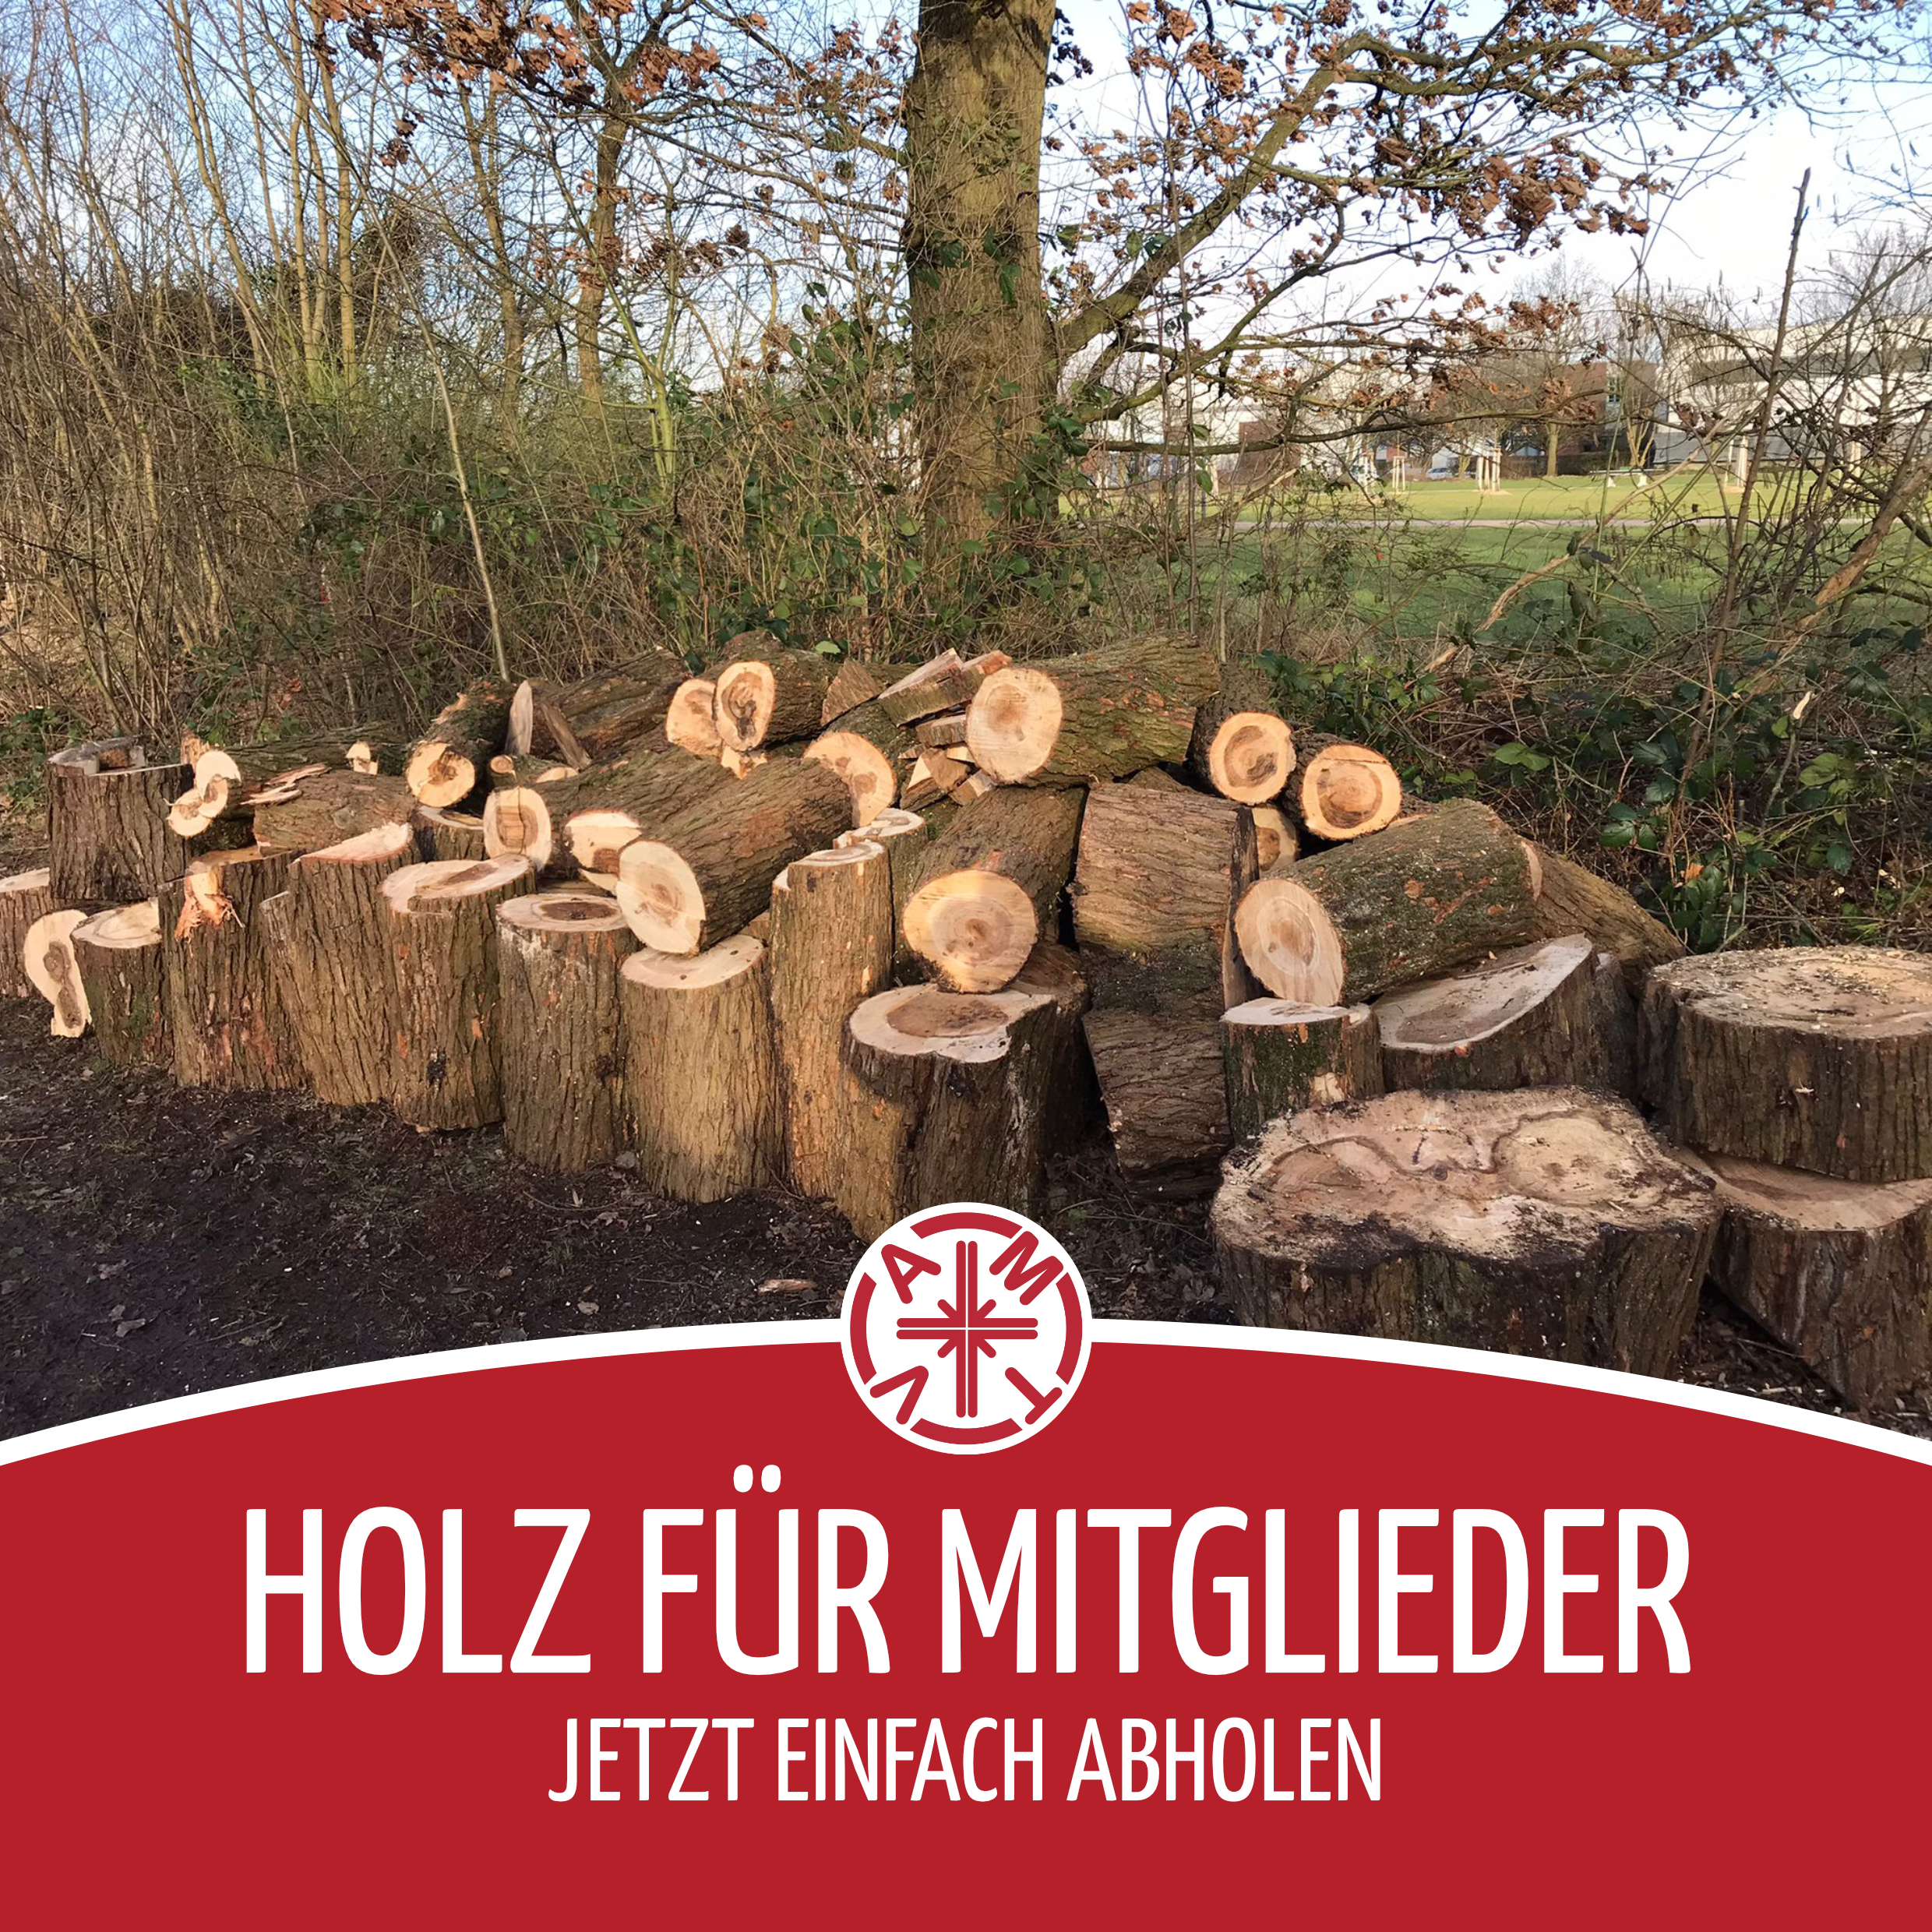 18.02.2022 - Holz für Mitglieder 